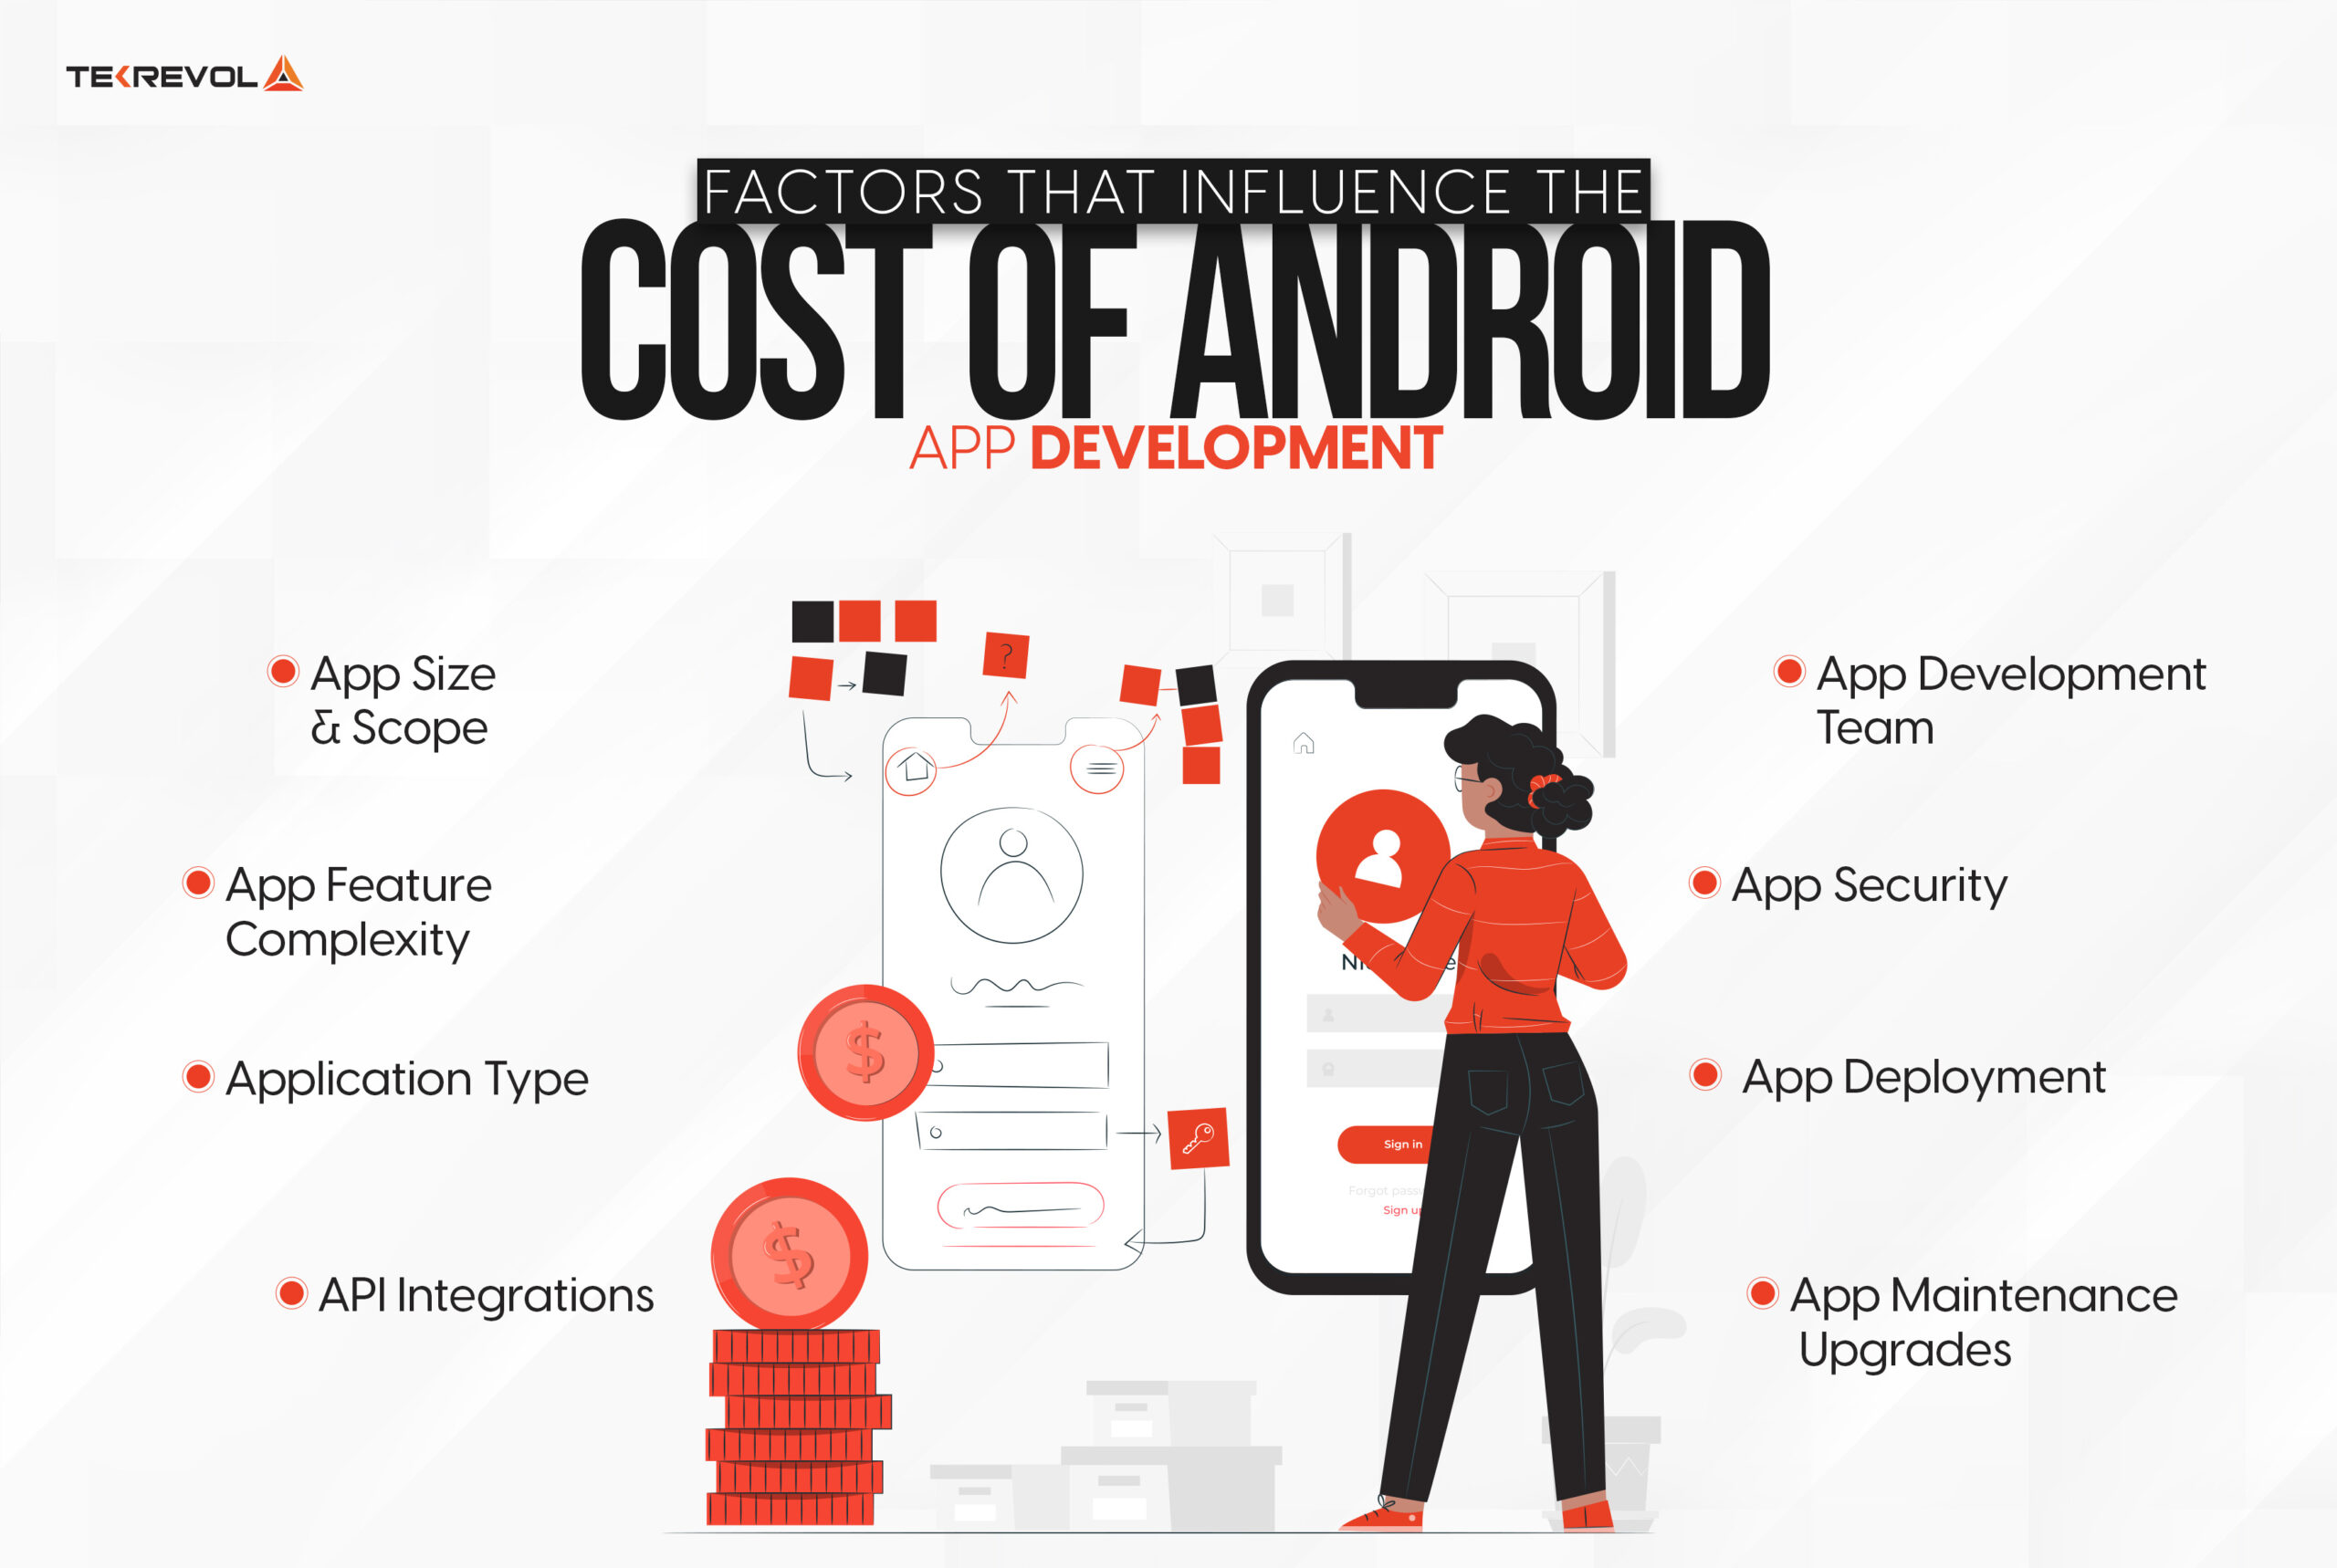 Breakdown of Android App Development Cost Factors